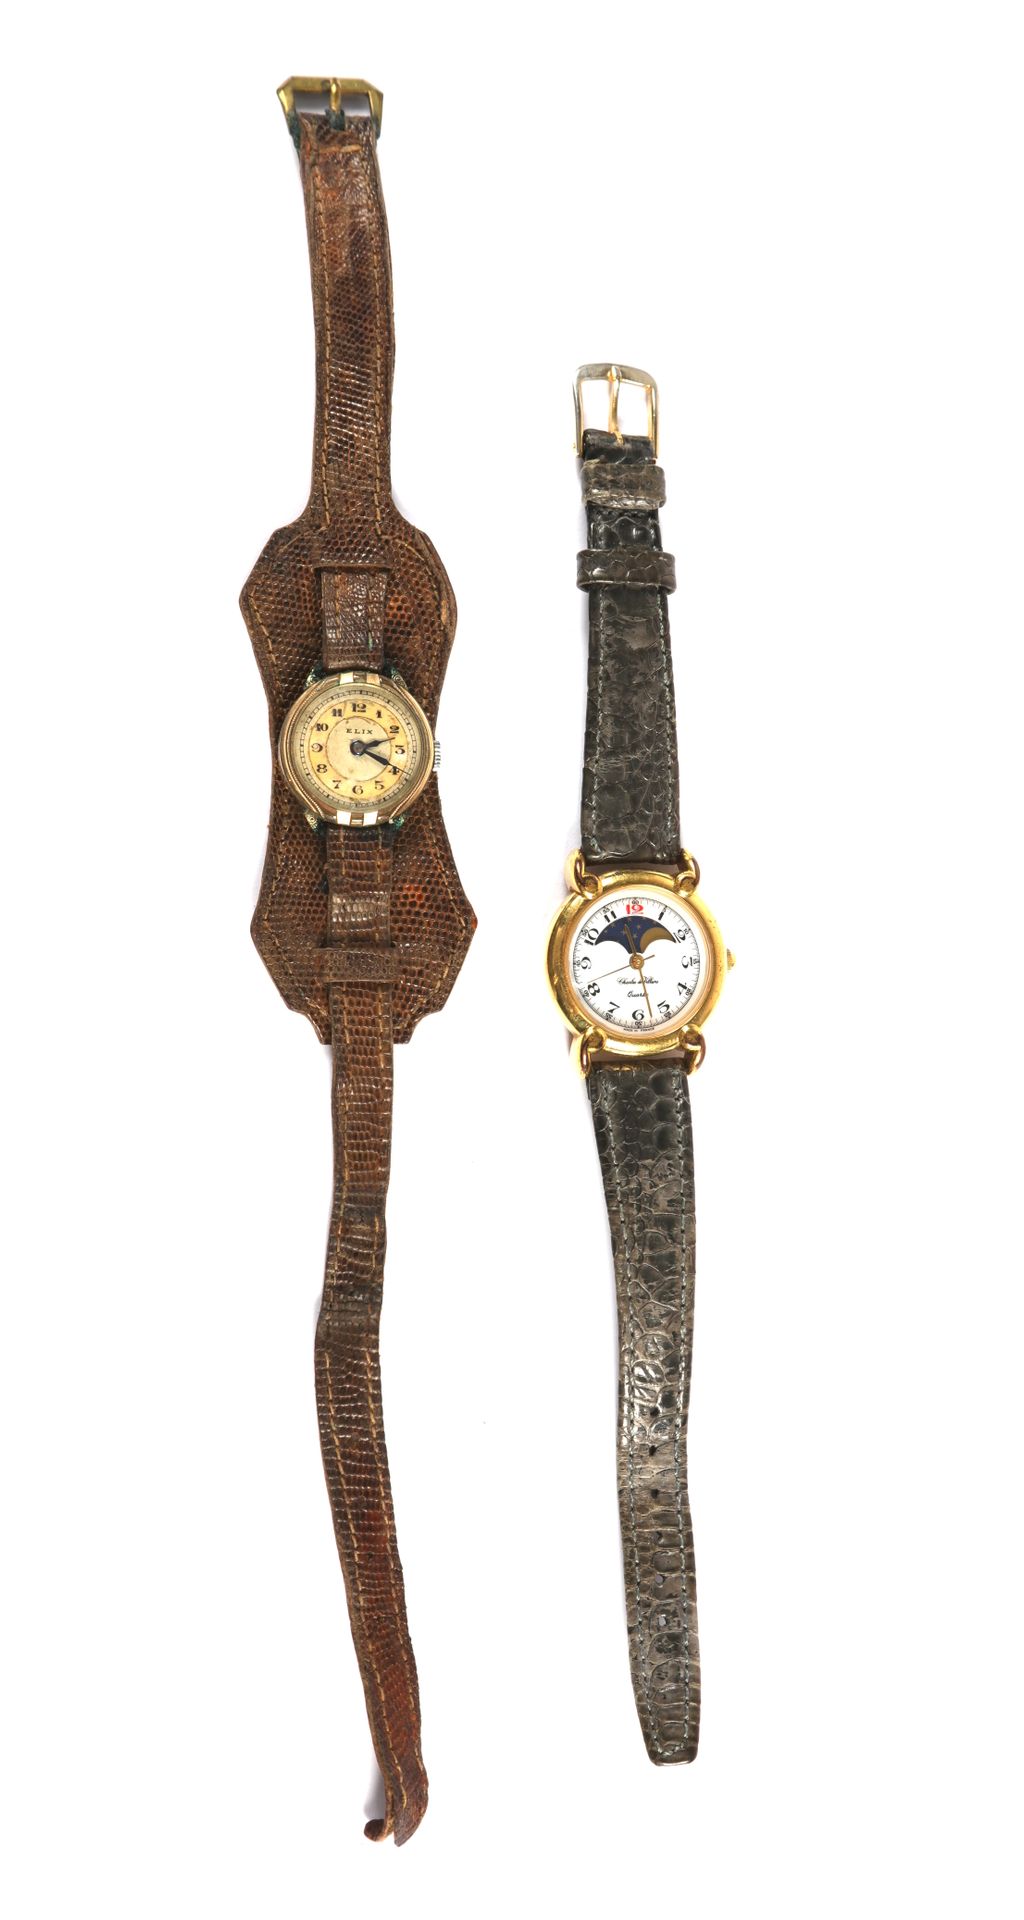 Null Lote de dos relojes, Charles de Villiers (cuarzo) y reloj Elix en lagarto.